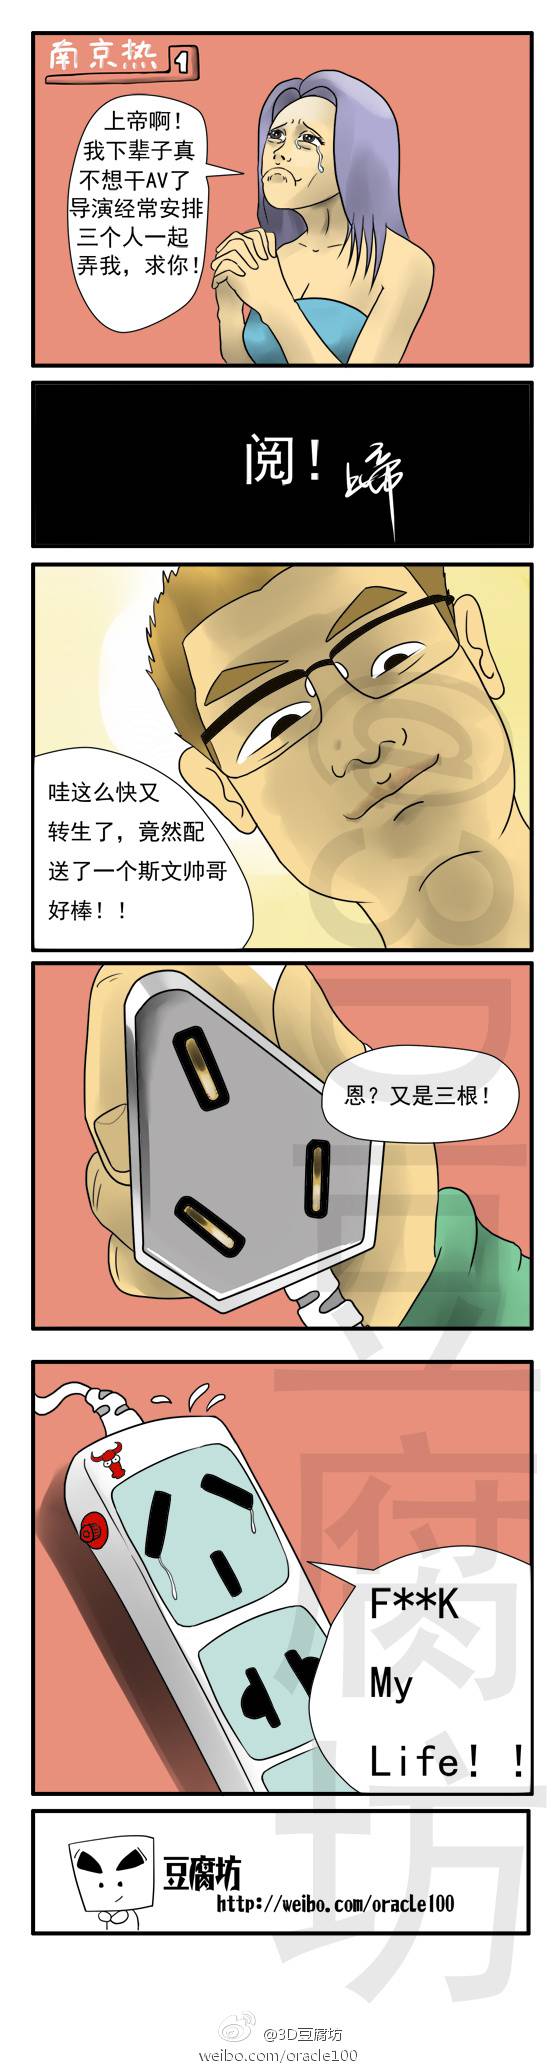 邪恶漫画爆笑囧图第59刊：不解